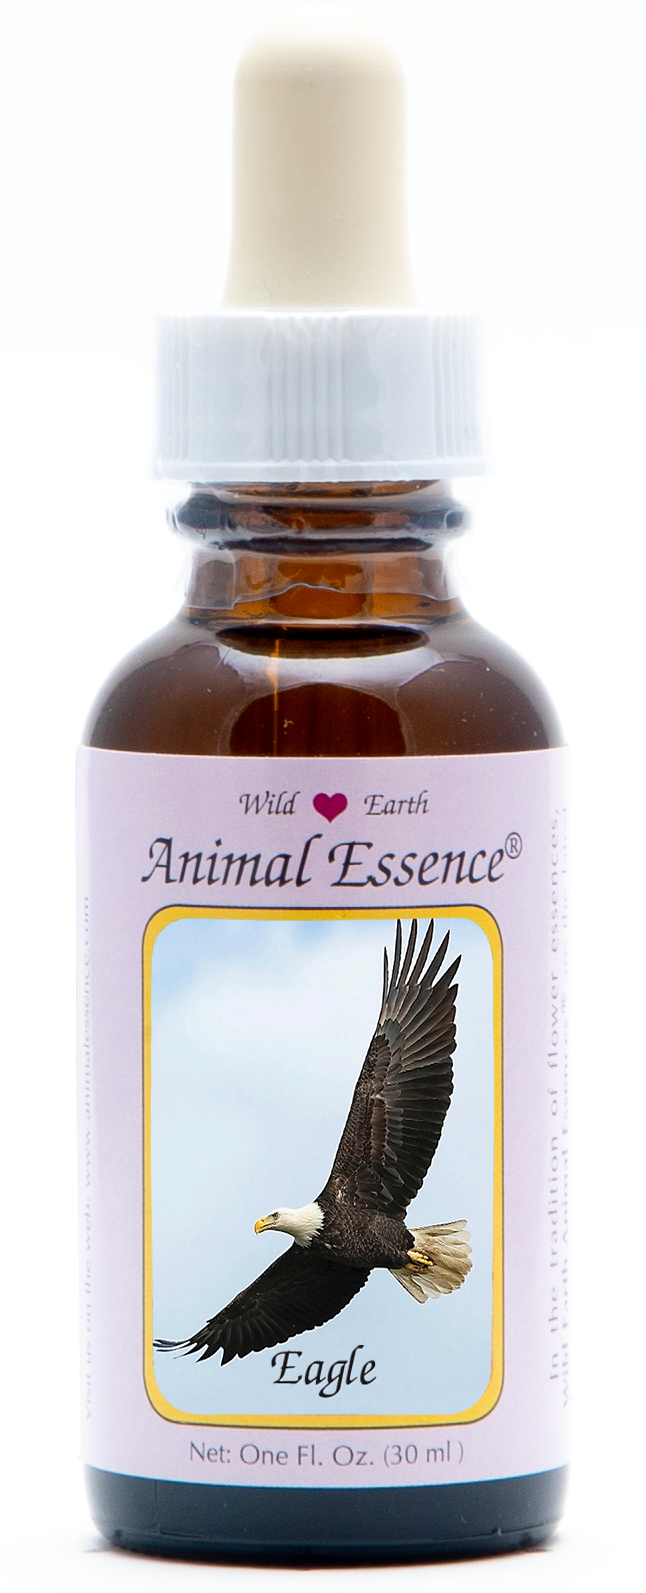 Eagle animal essence 30ml